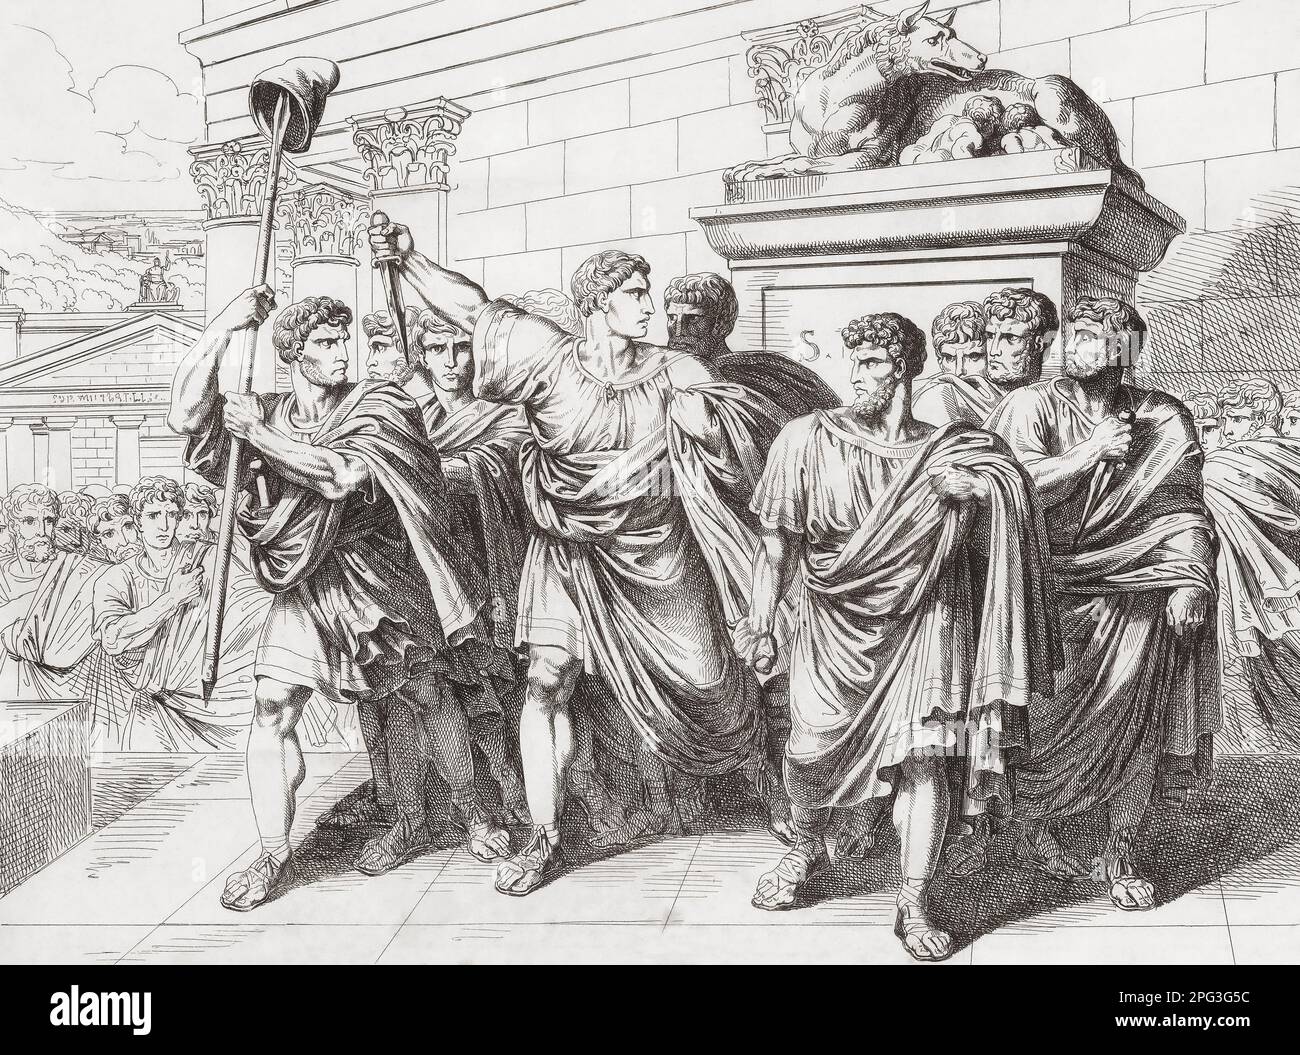 Marcus Junius Brutus und andere Verschwörer nach dem Mord an Julius Cäsar am 15. März 44 v. Chr. Nach einem Werk aus dem 19. Jahrhundert von Bartolomeo Pinelli. Stockfoto